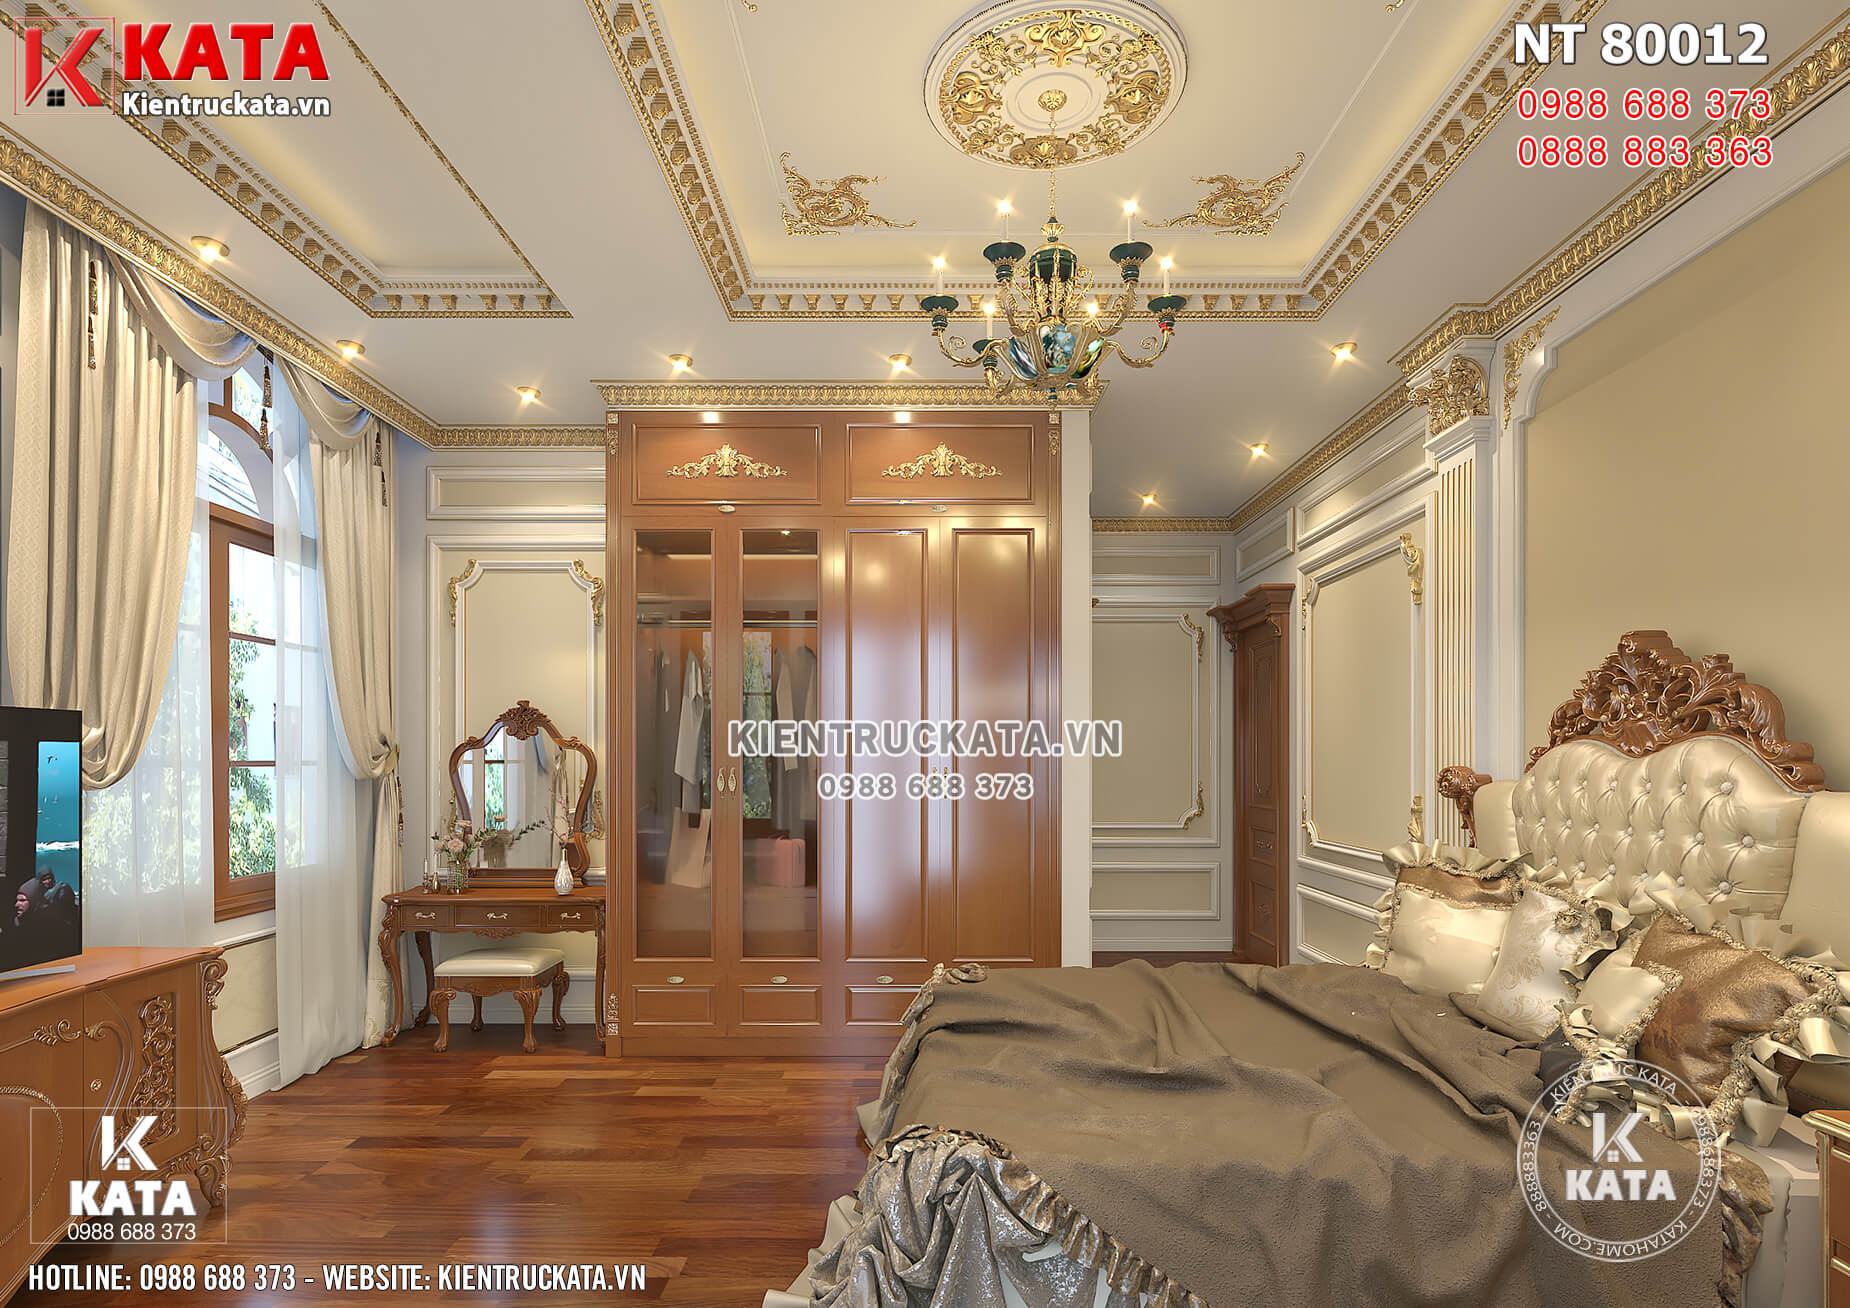 Các món đồ nội thất của phòng ngủ được thiết kế bằng chất liệu gỗ tự nhiên sang trọng